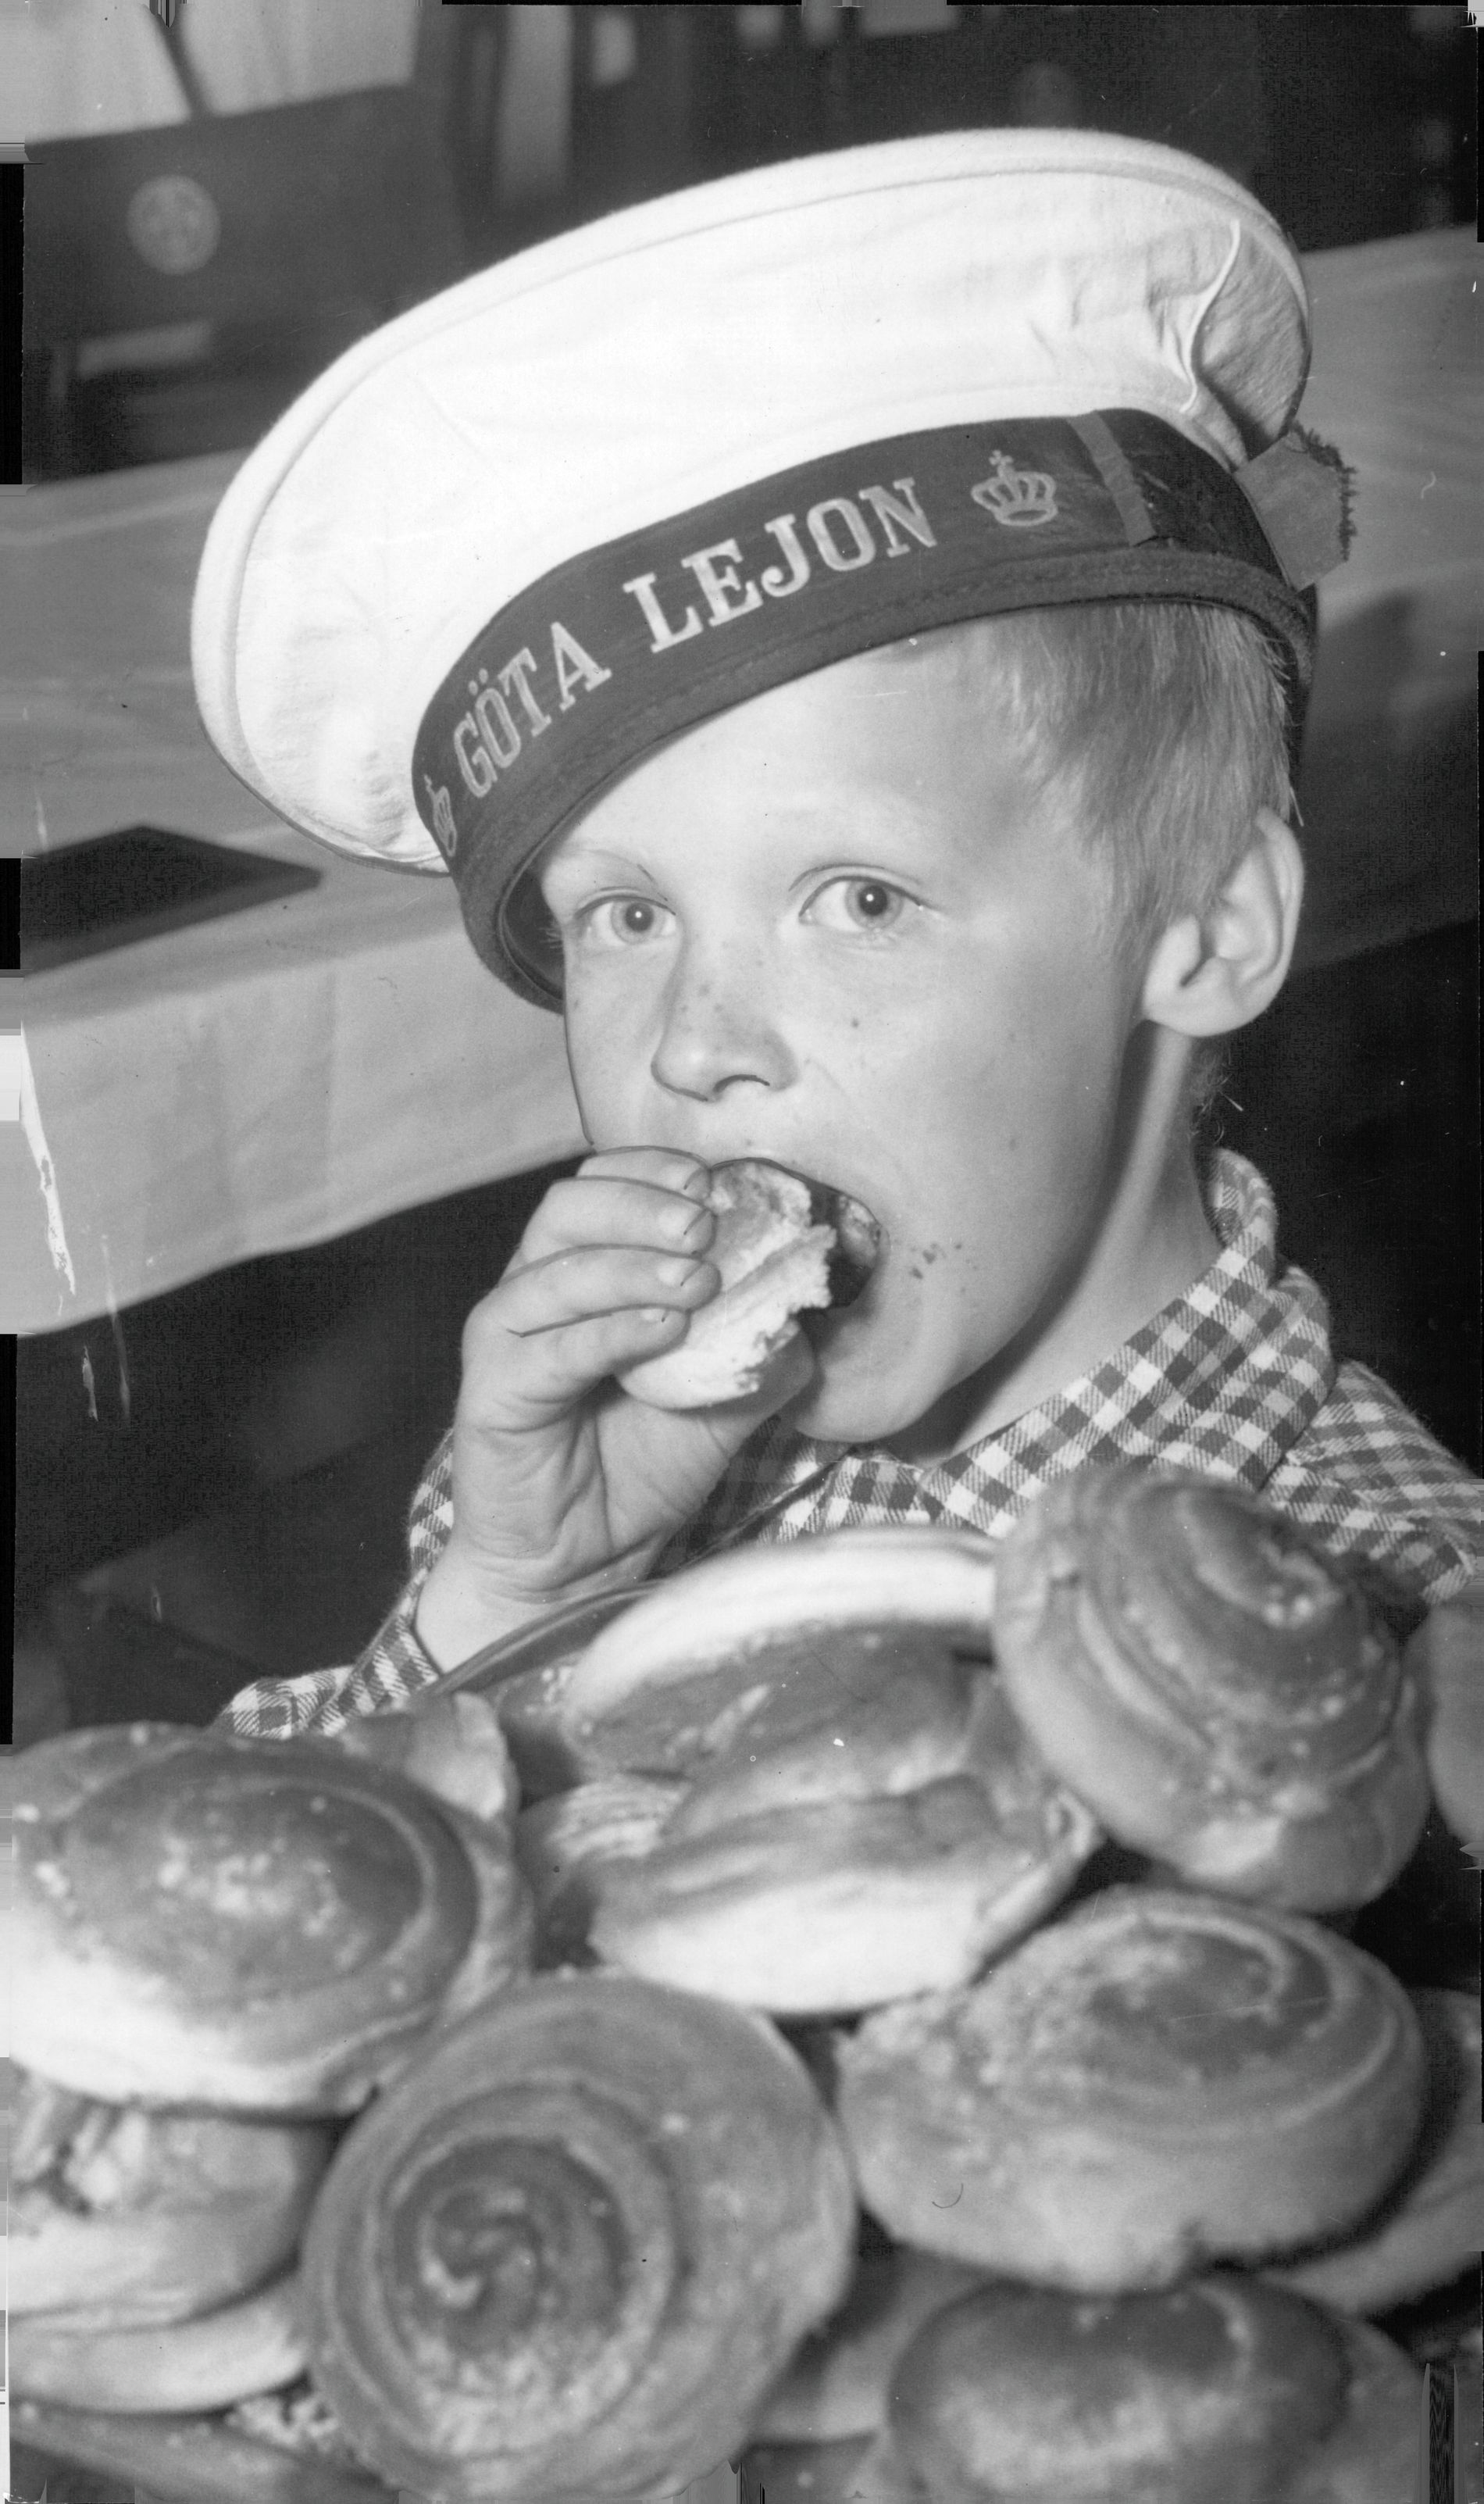 Även 1952 var kanelbullen ett självklart val. Folkskolepojkar på kryssaren HMS Göta Lejon och jagaren HMS Uppland. Marinlottor bjöd på saft och bullar, som pojken på bilden lät sig väl smaka.